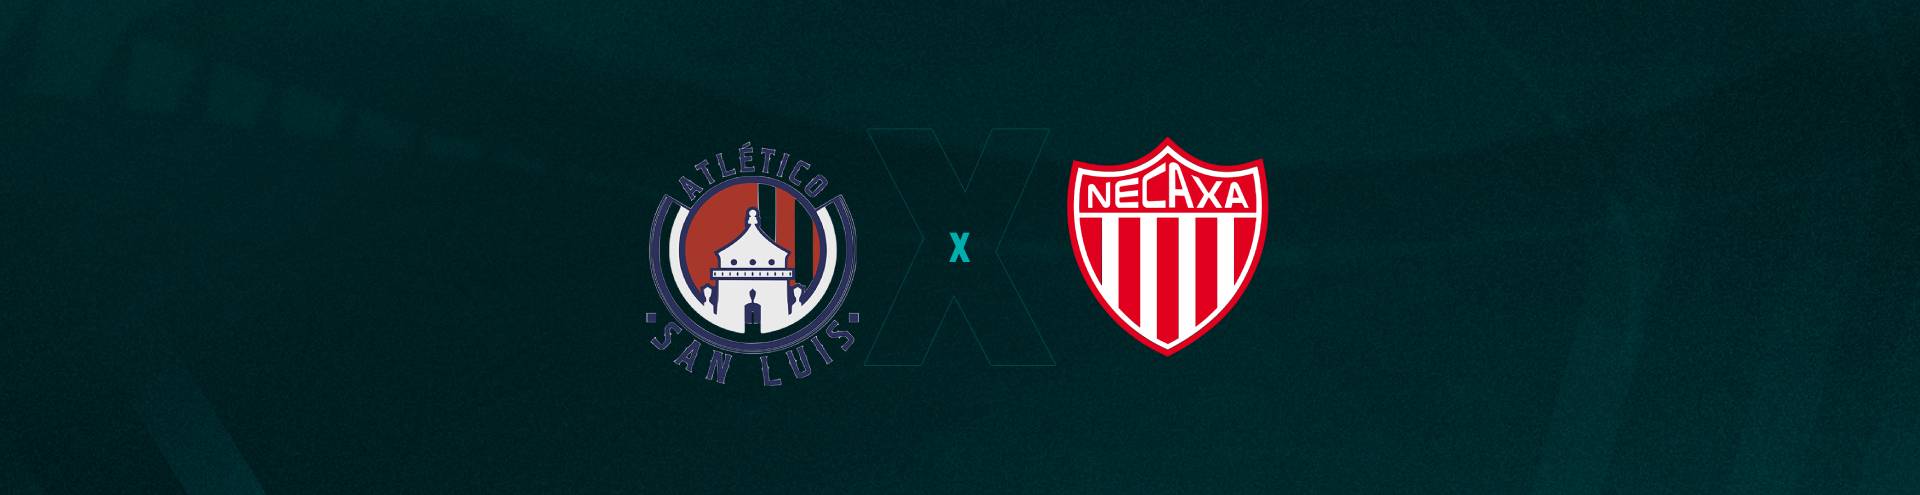 Campeonato Mexicano: Assista ao vivo o jogo Mazatlán x Atlético